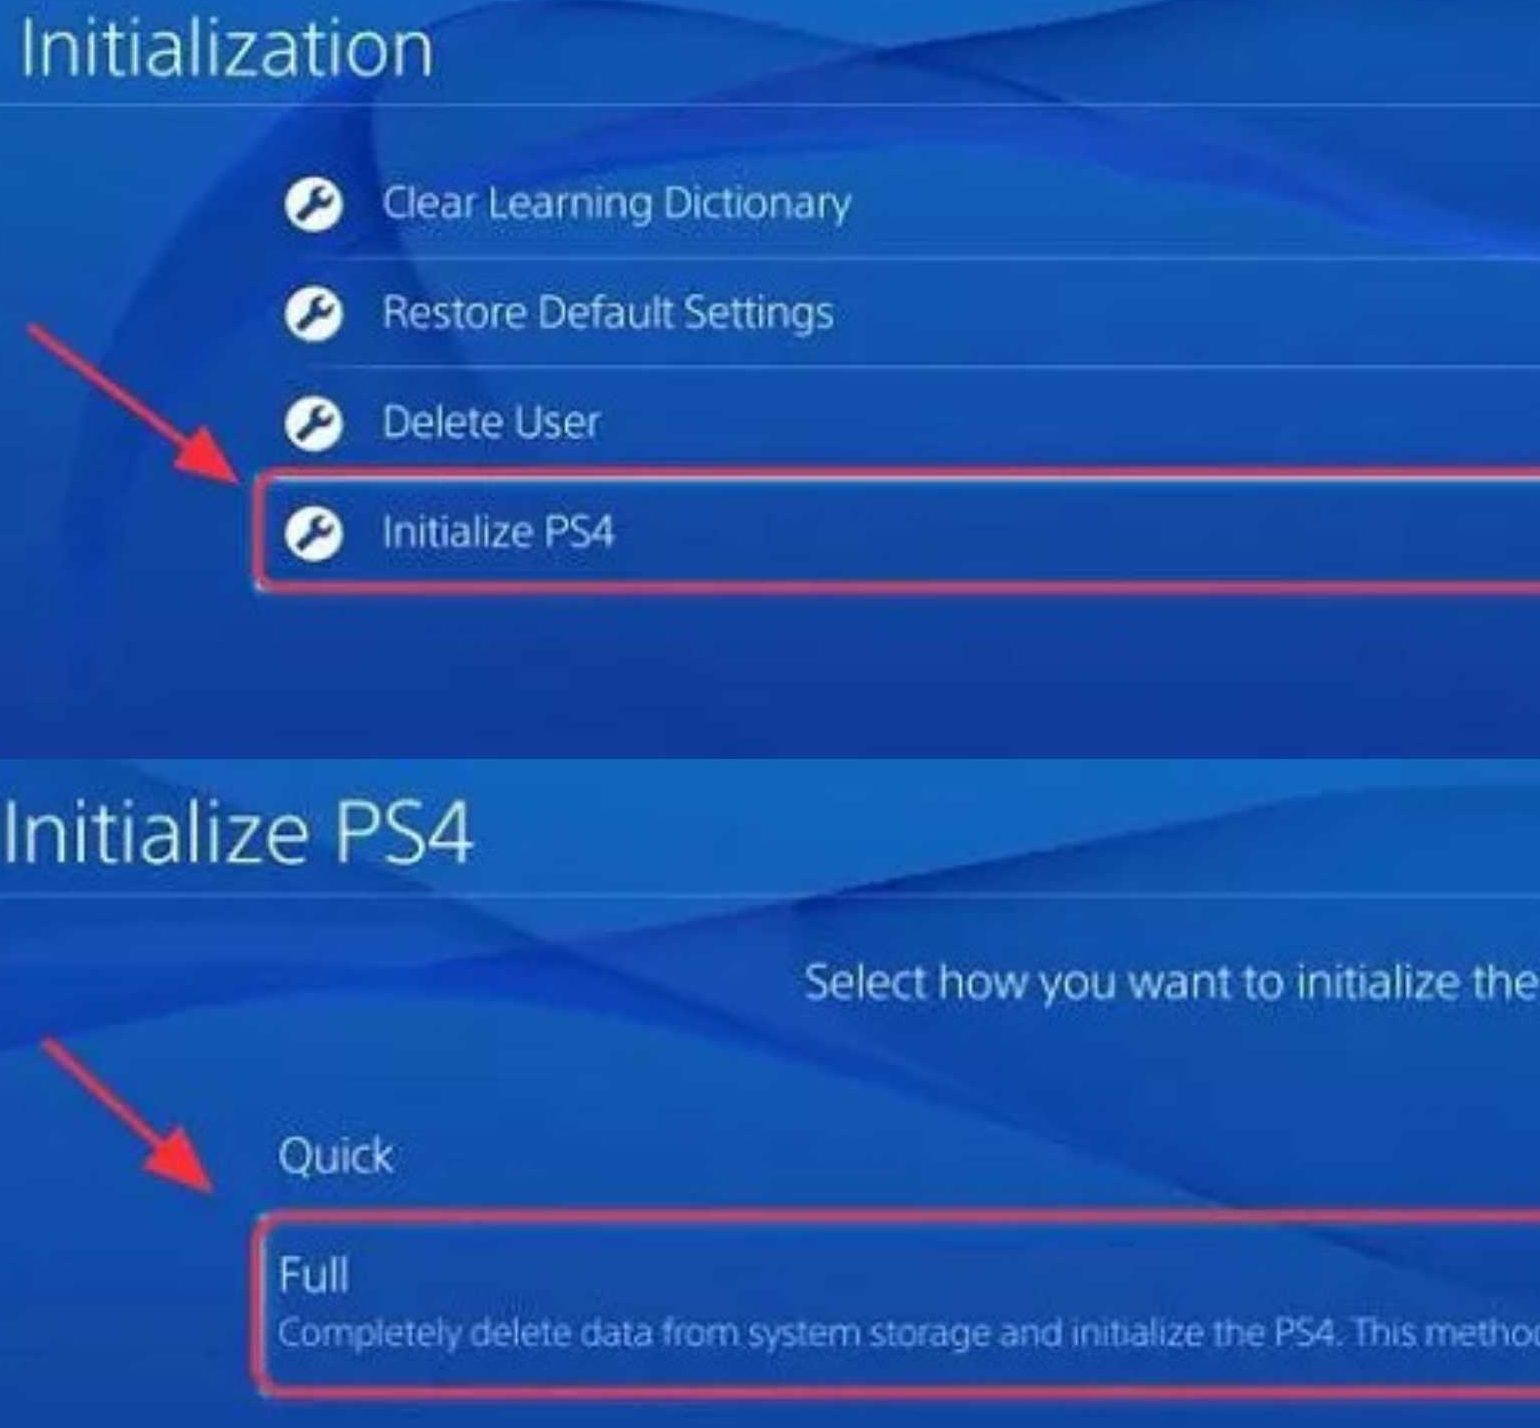 PS4 initialization